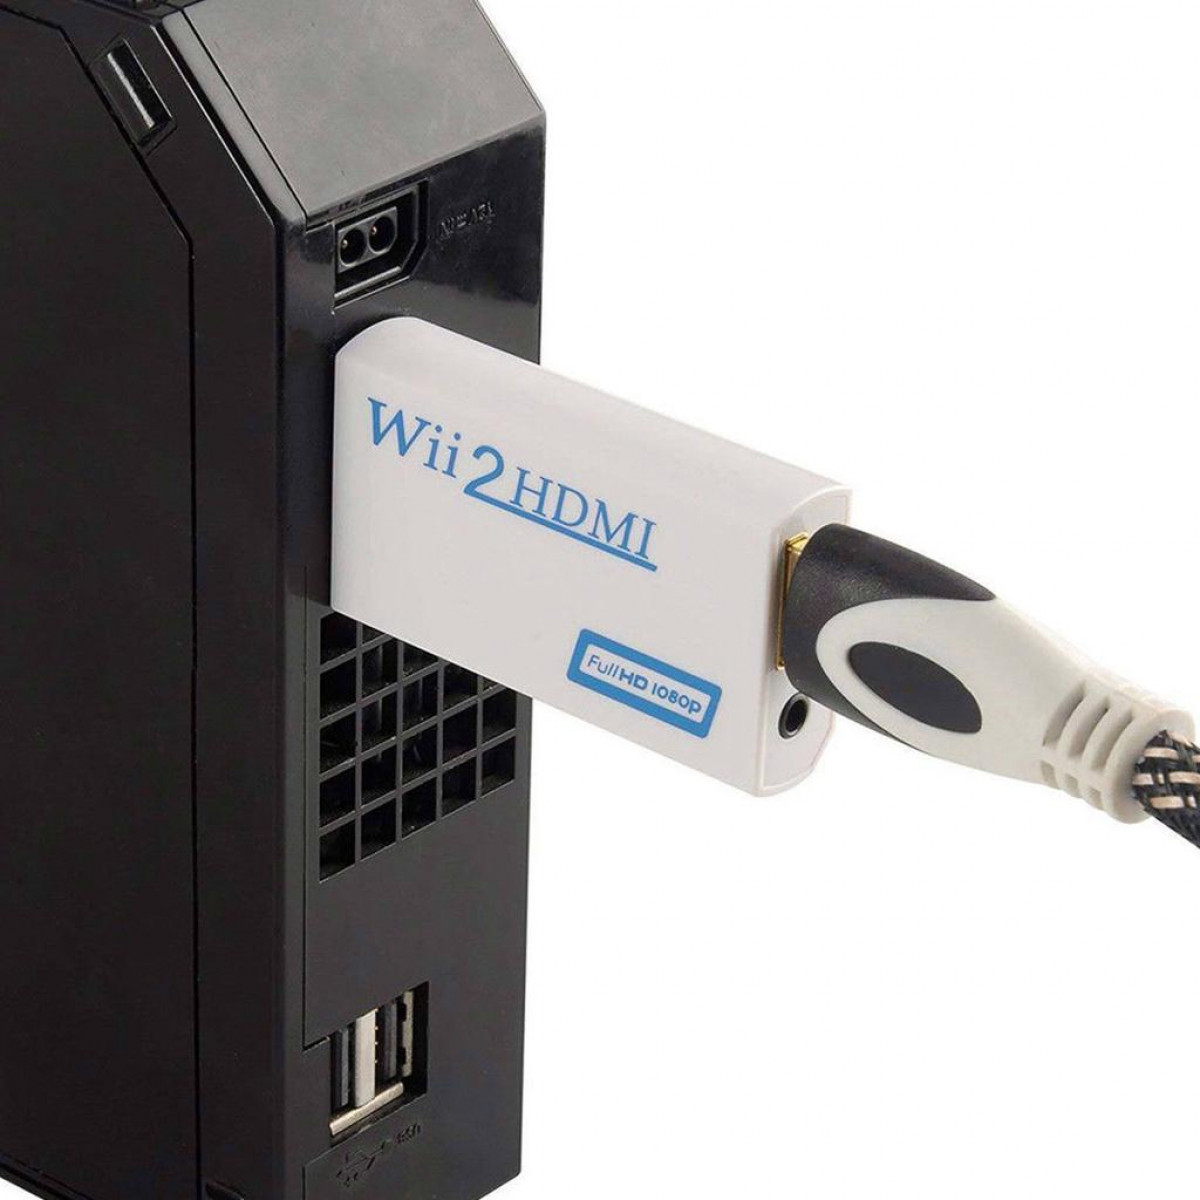 INF Wii zu HDMI Adapter, Adapter Wii Konverter 720/1080P to HD mit Converter HDMI 3